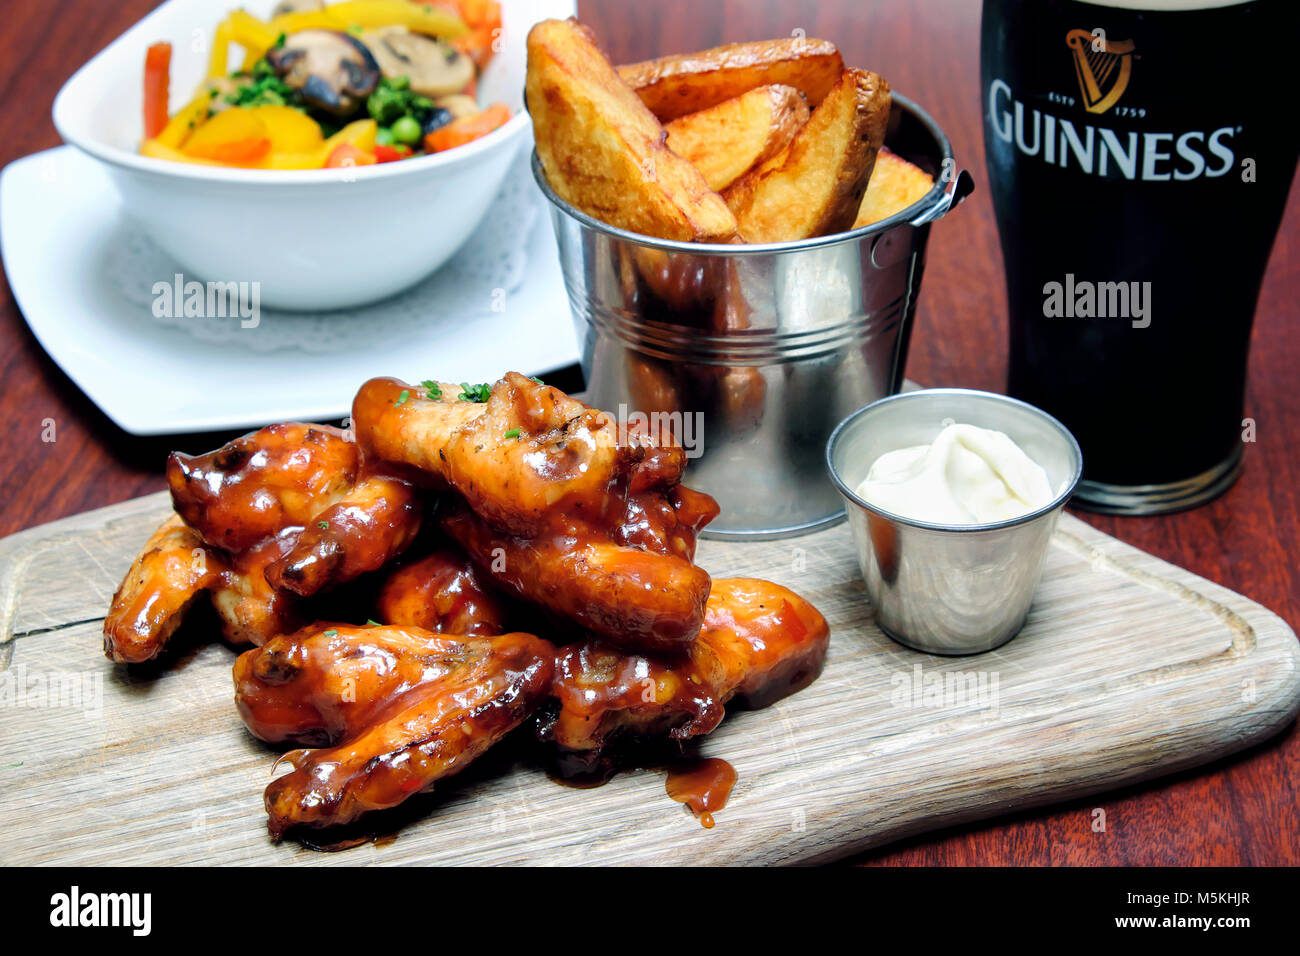 Chicken Wings warf in bbq und Sweet Chili Sauce mit Blue Cheese dip, Chips und ein Pint Guinness, Doheny & Nesbitt Pub, Dublin, Irland Stockfoto